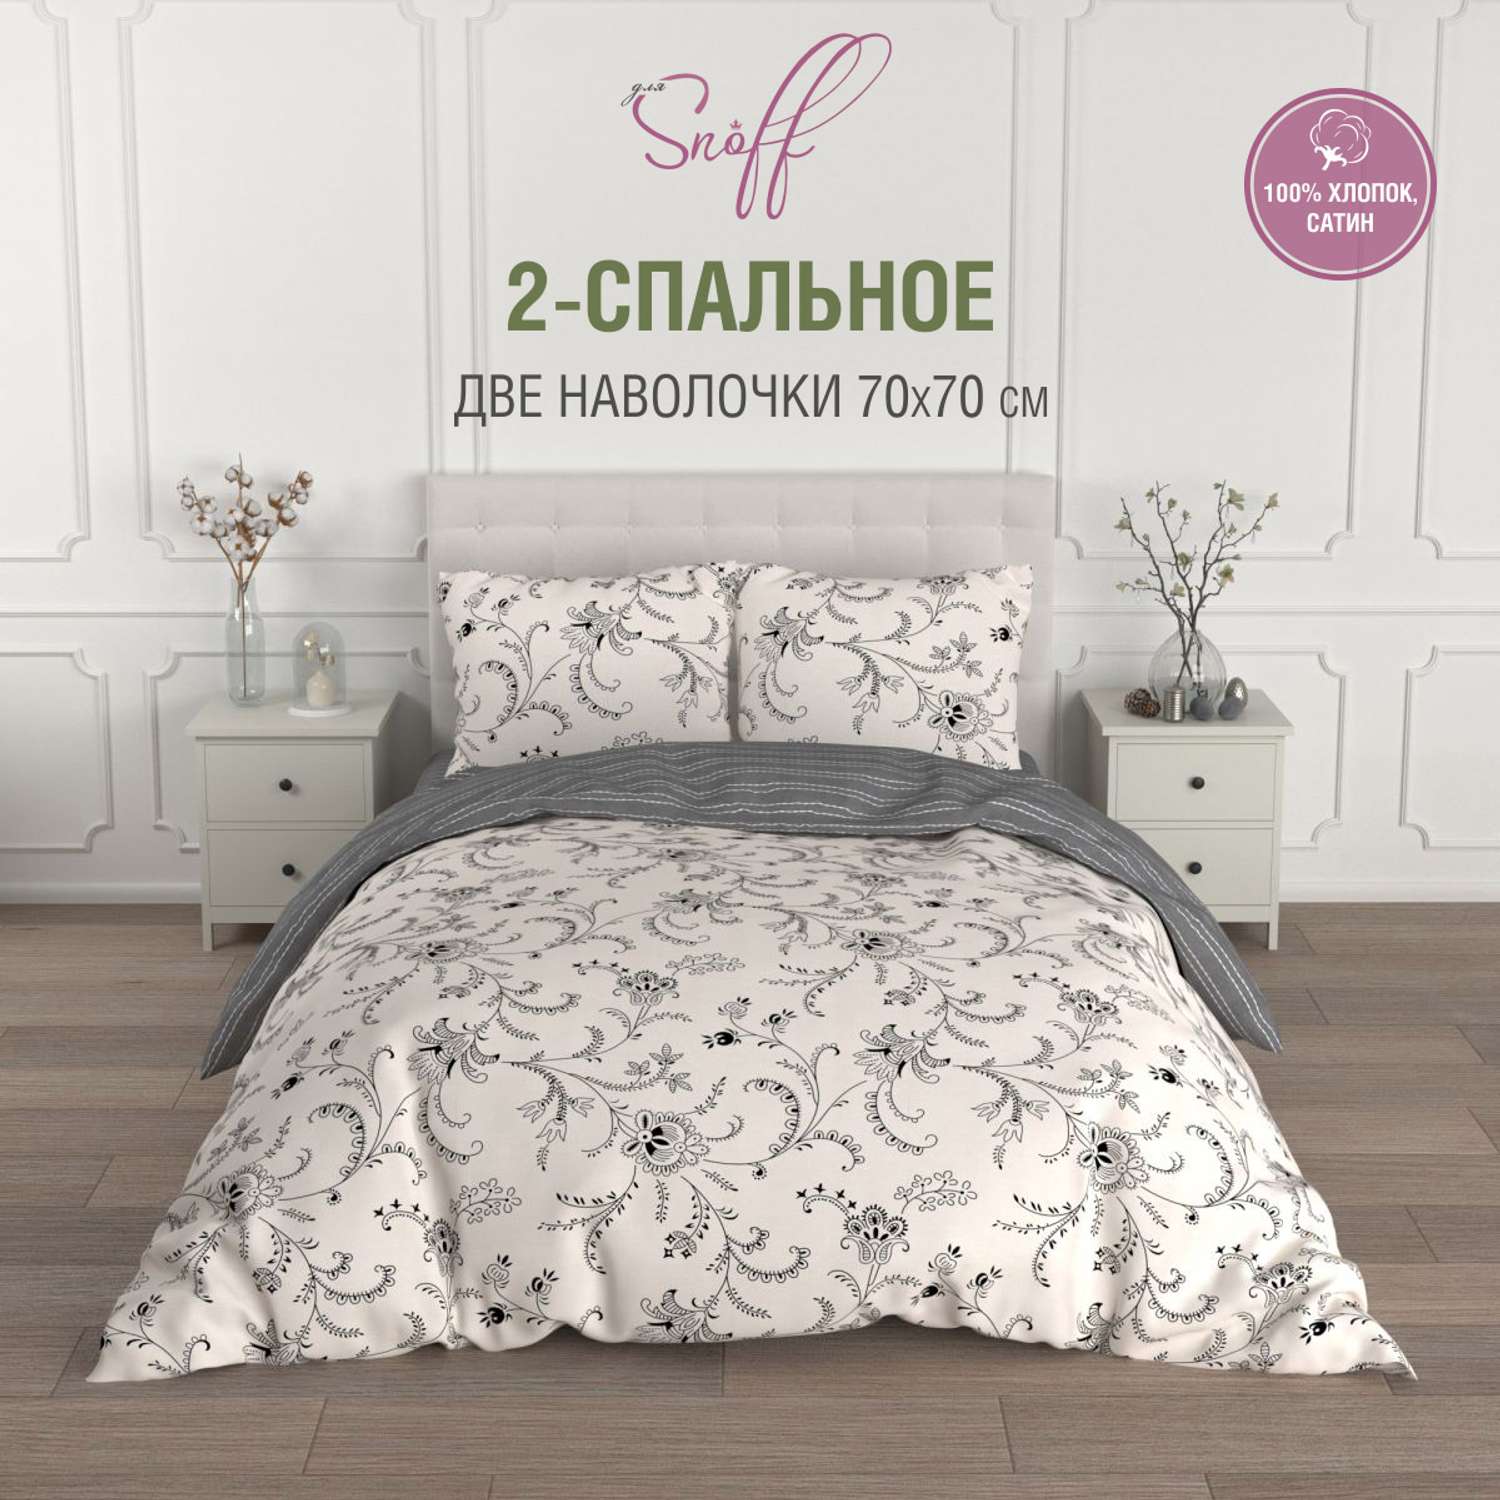 Комплект постельного белья для SNOFF Реймс 2-спальный макси сатин - фото 1